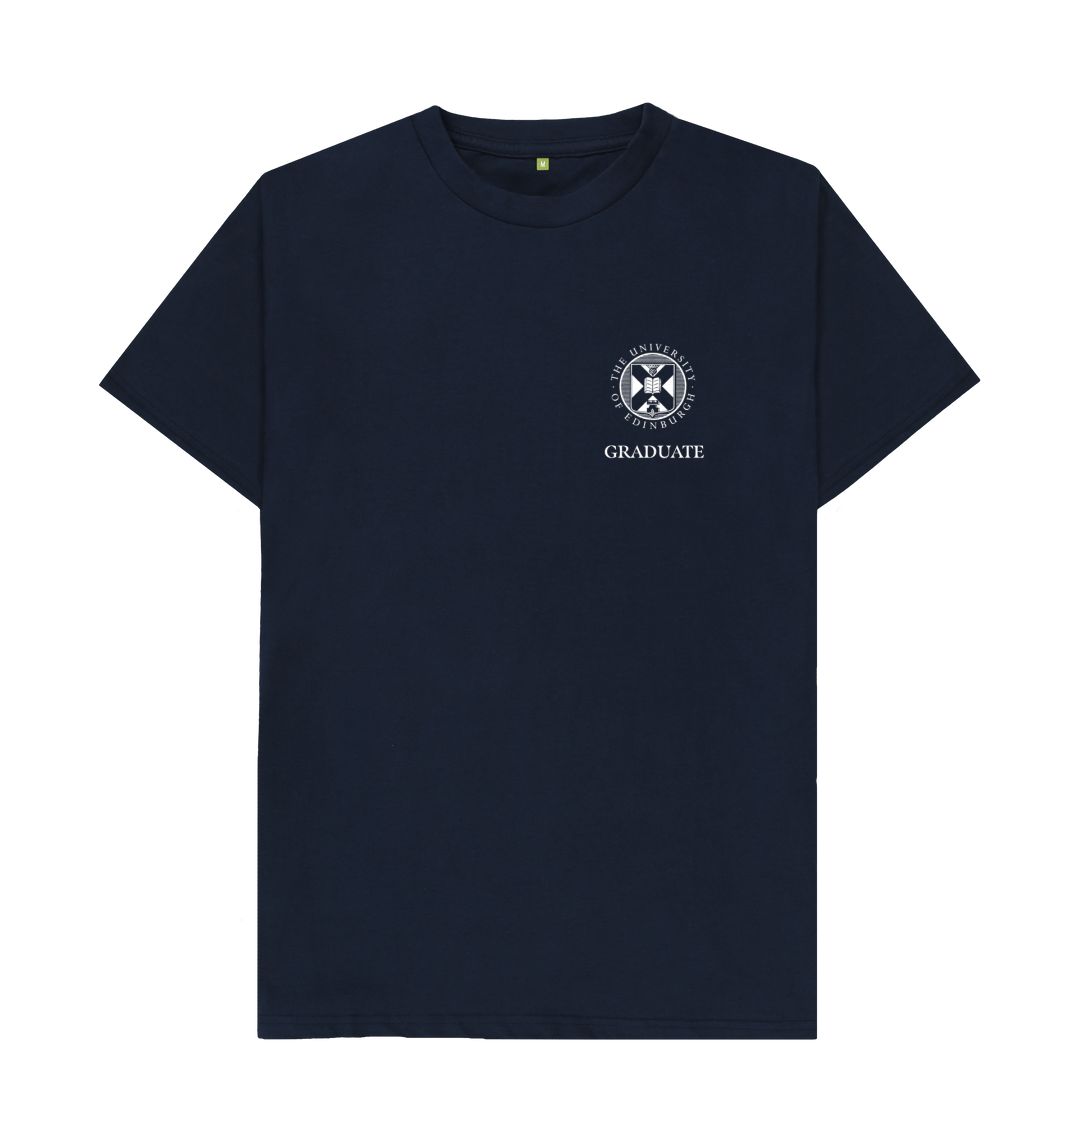 Navy Blue Edinburgh College of Art 'Class Of' Graduate T-Shirt